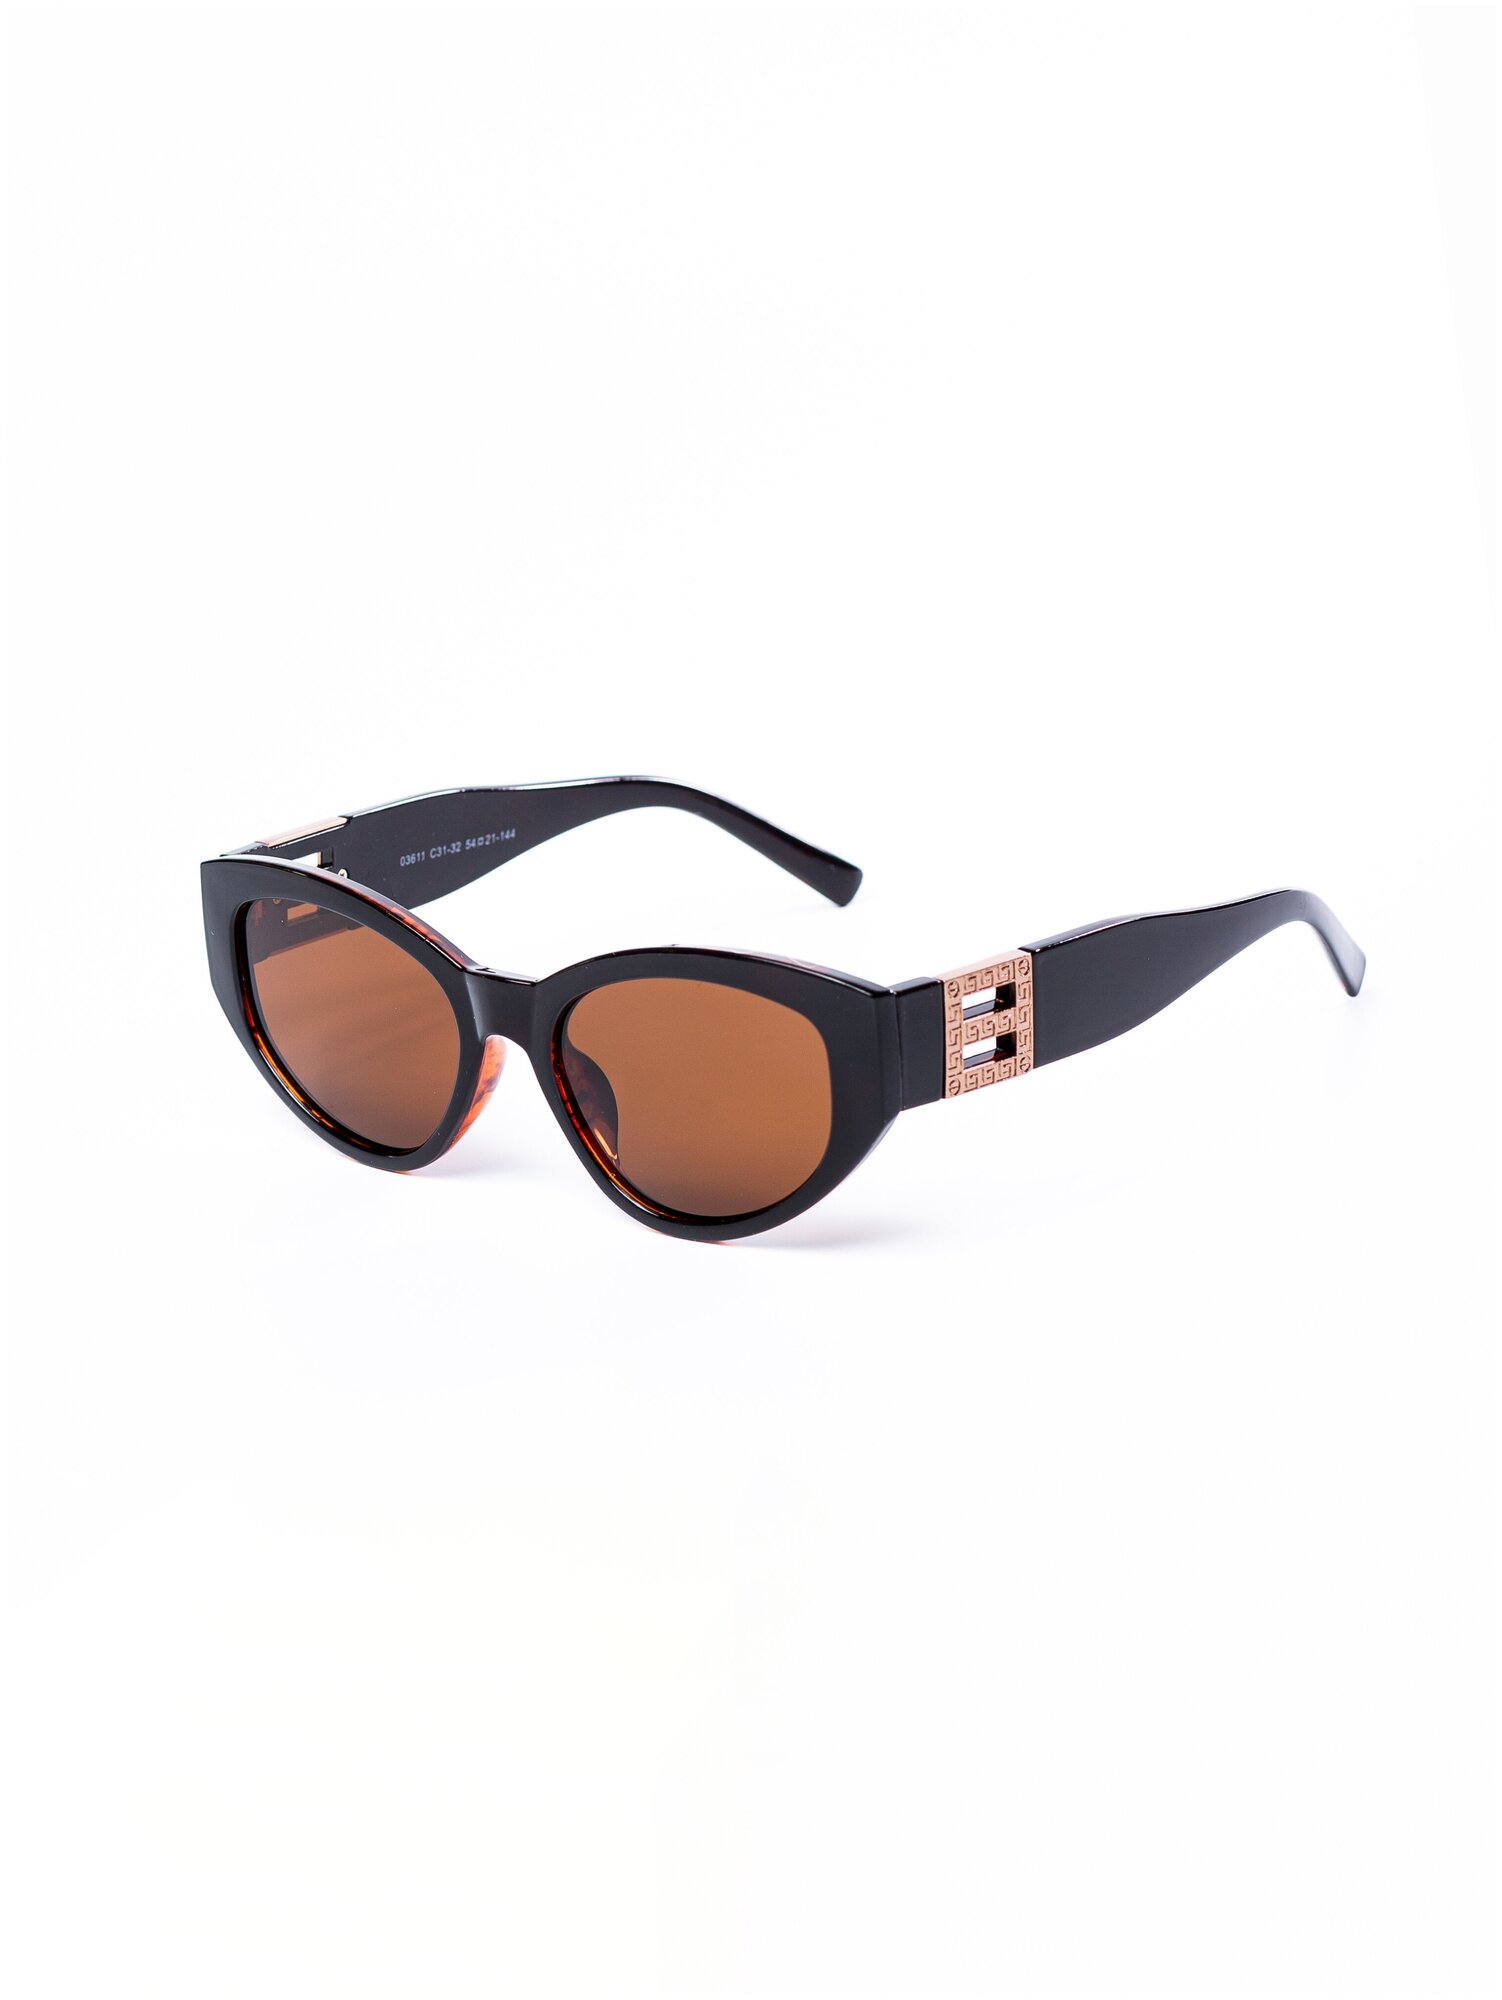 Солнцезащитные очки женские / Оправа «кошачий глаз» / Стильные очки / Ультрафиолетовый фильтр / Защита UV400 / Темные очки 200422534